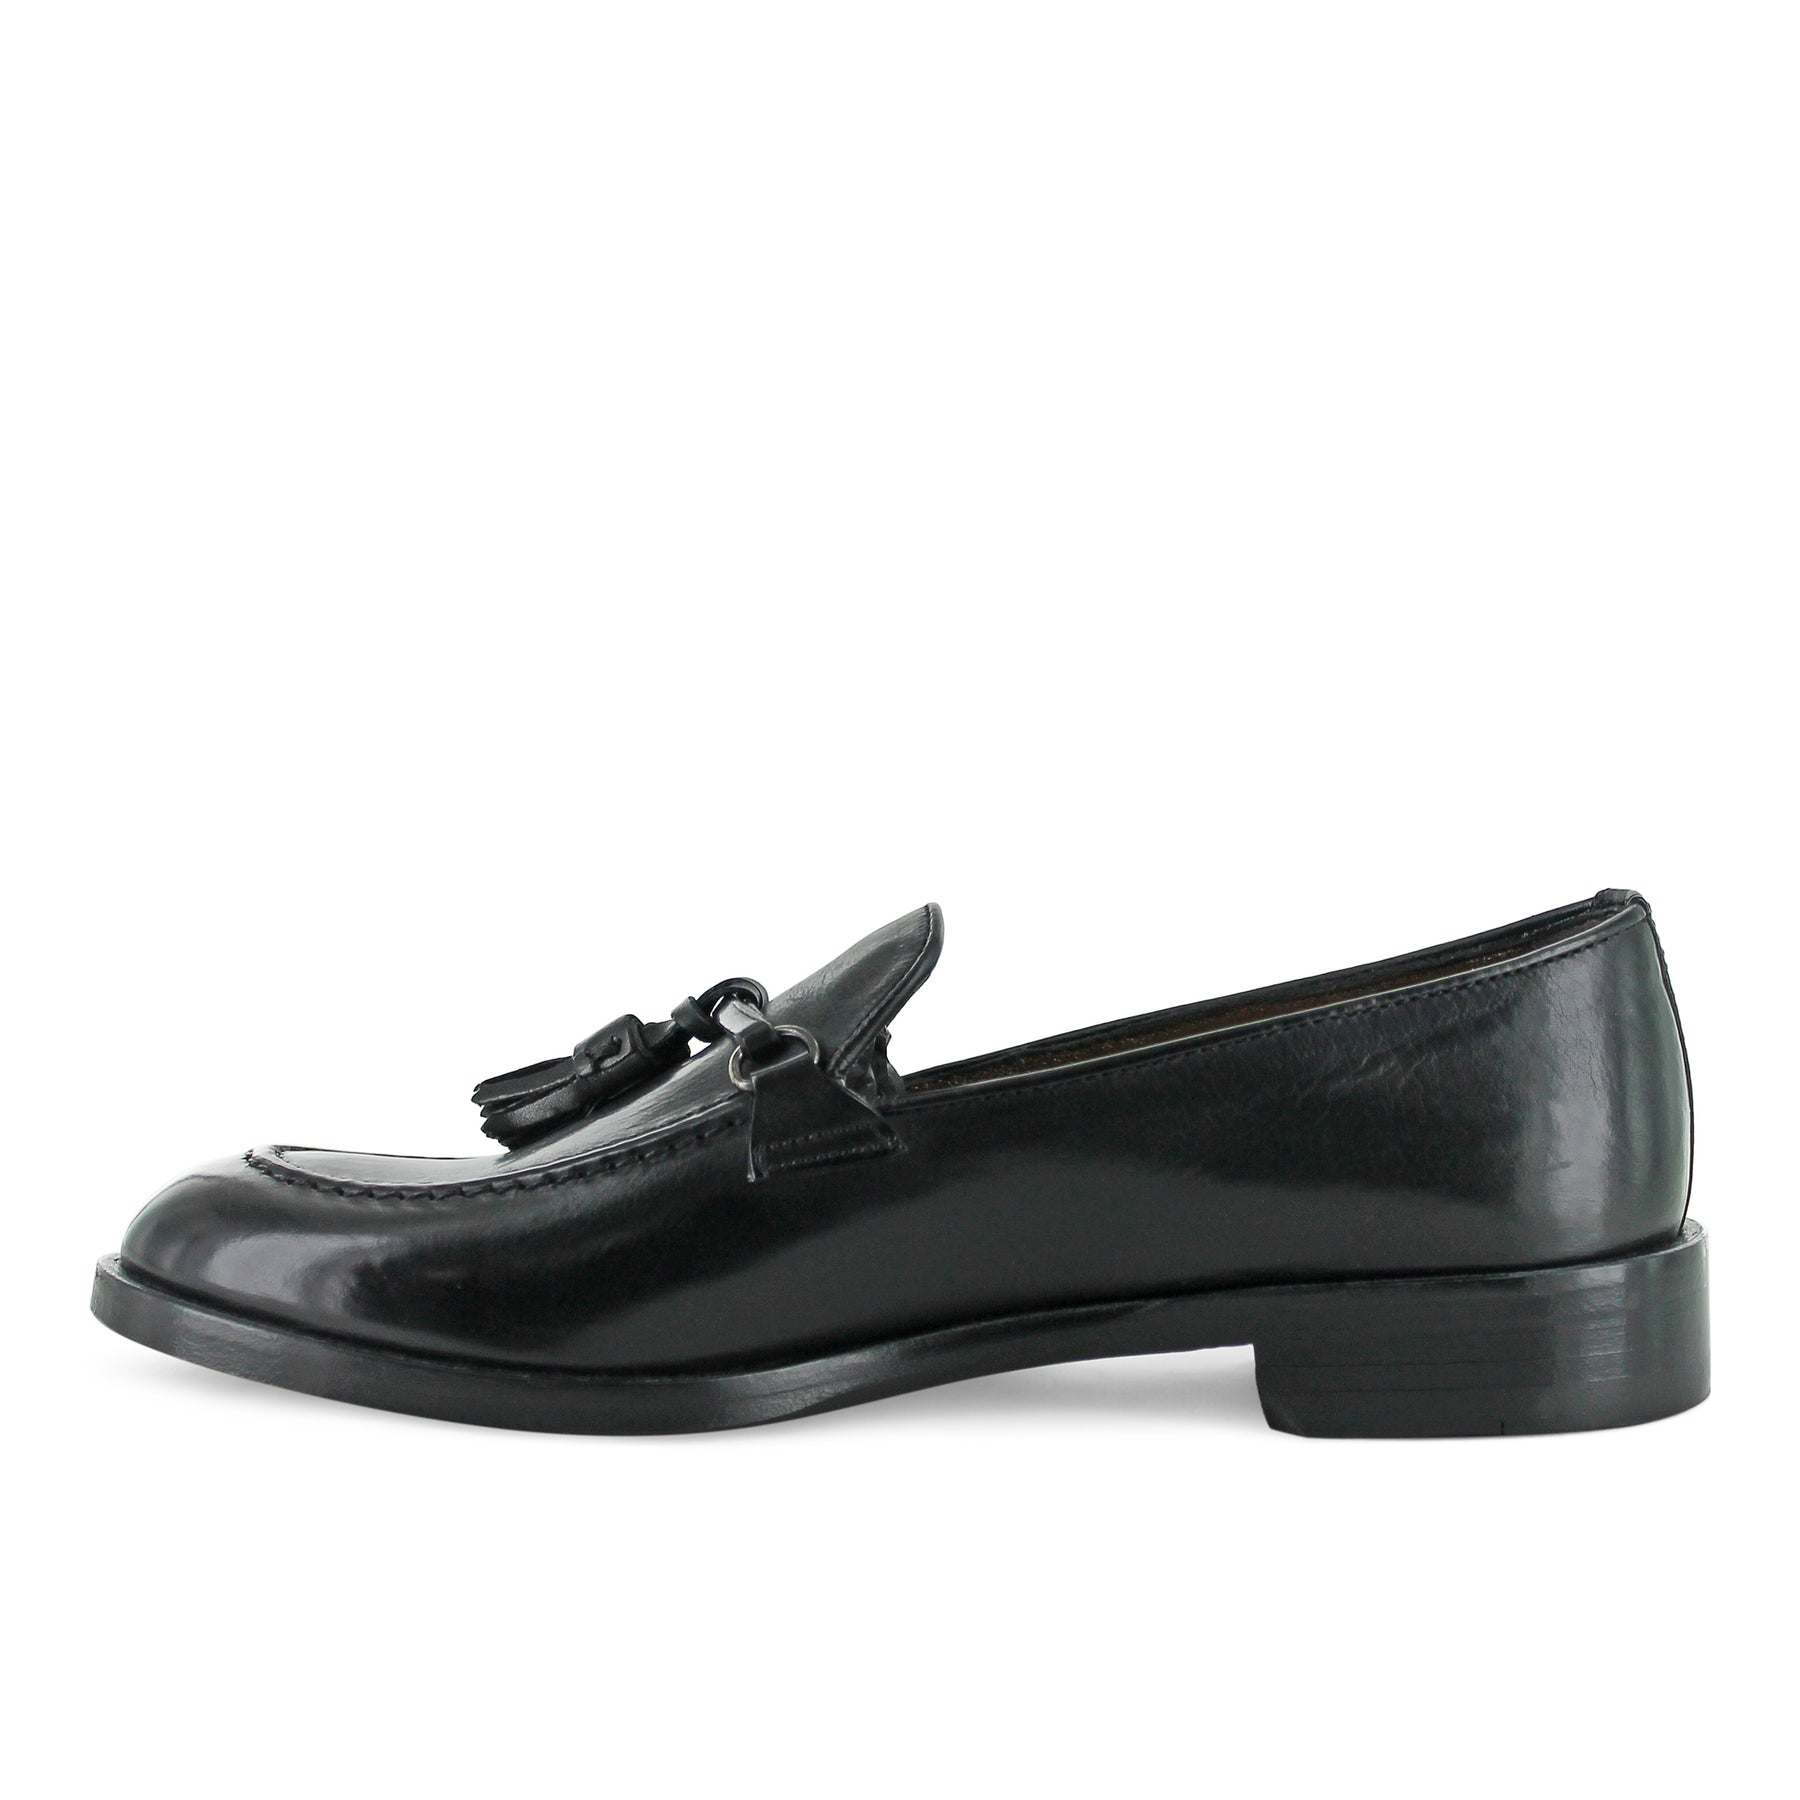 DOO7 - Black Leather Tassel Loafer